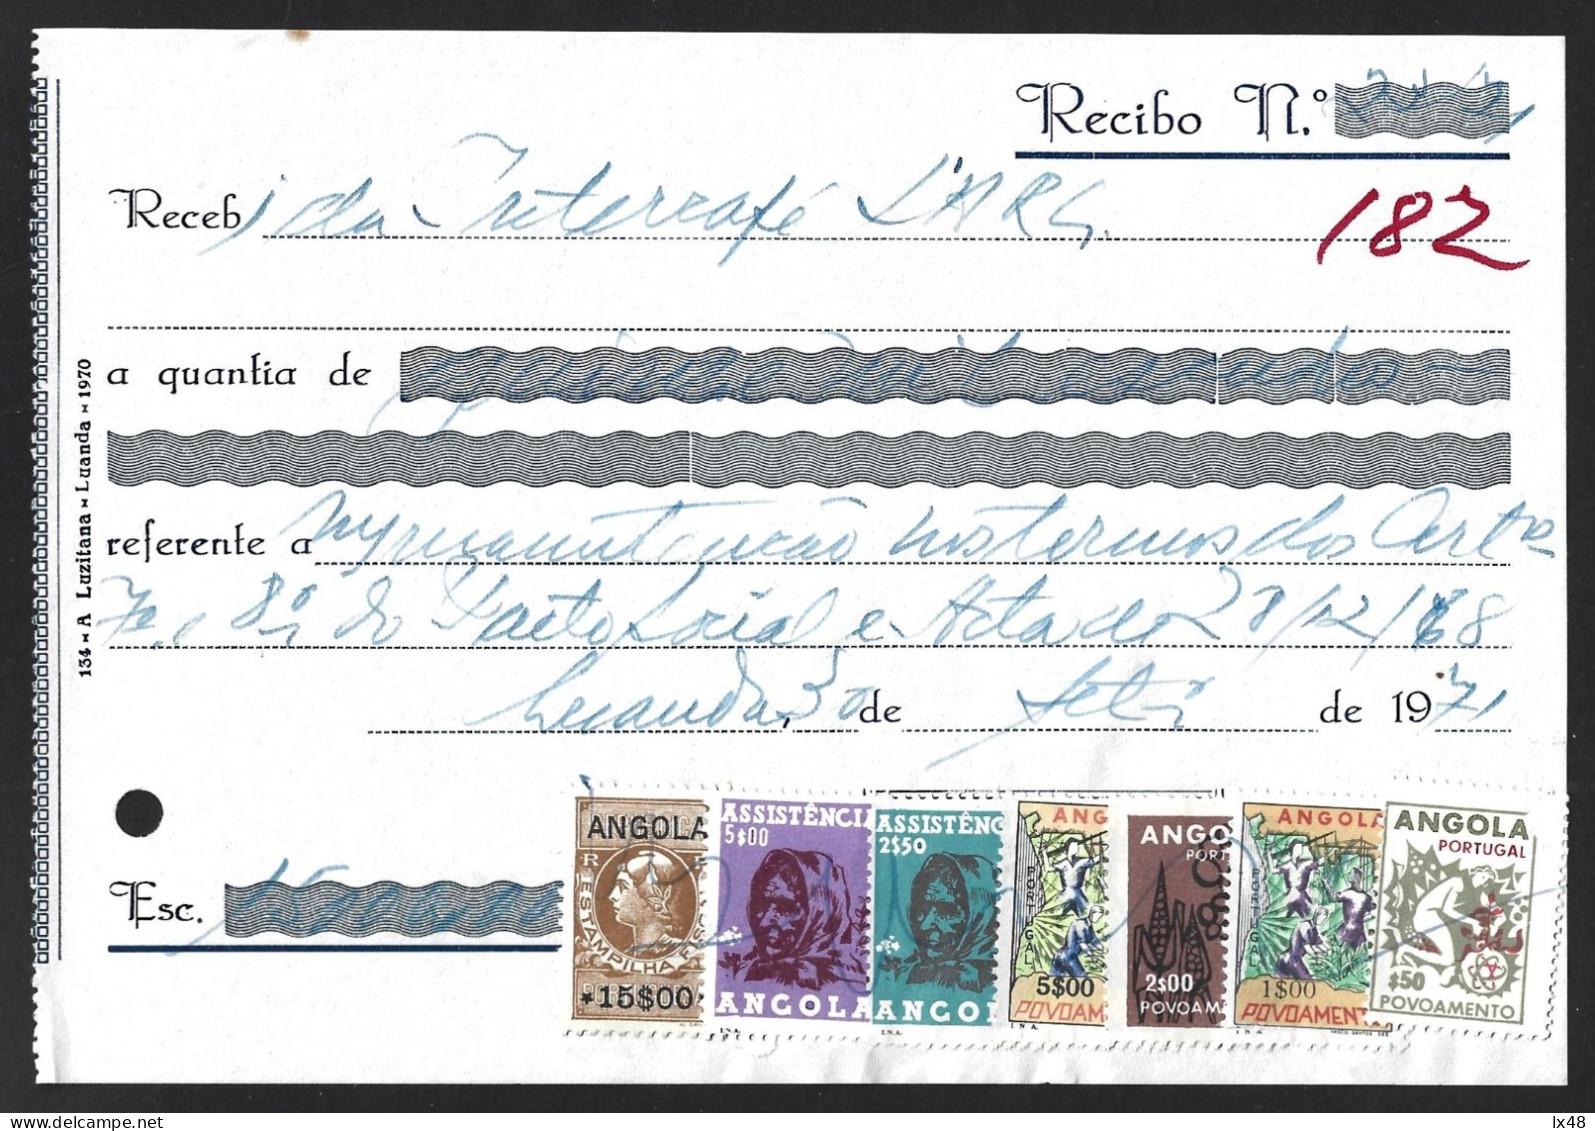 Recibo Emitido Em Luanda 1971 Com Stamp Fiscal 15$00 E 6 Stamps De Correio Usados Como Fiscais Da Assistência E Povoamen - Brieven En Documenten